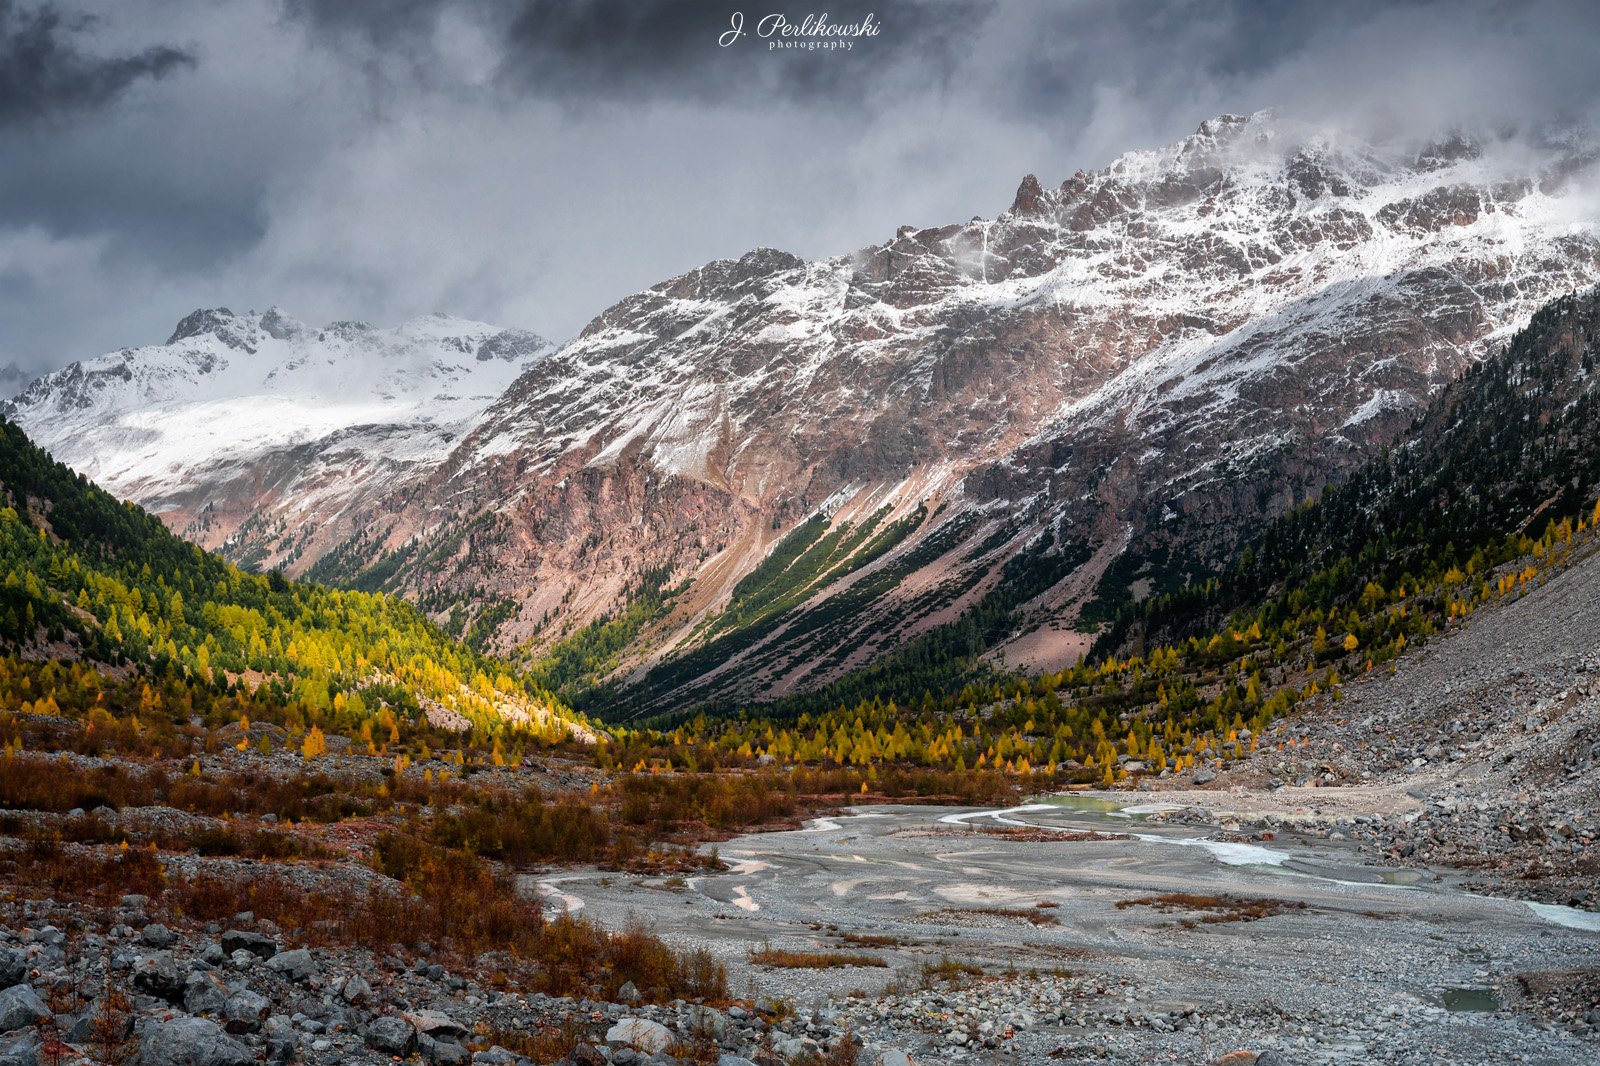 Switzerland, Alps, glacier, mountains, autumn, Jakub Perlikowski